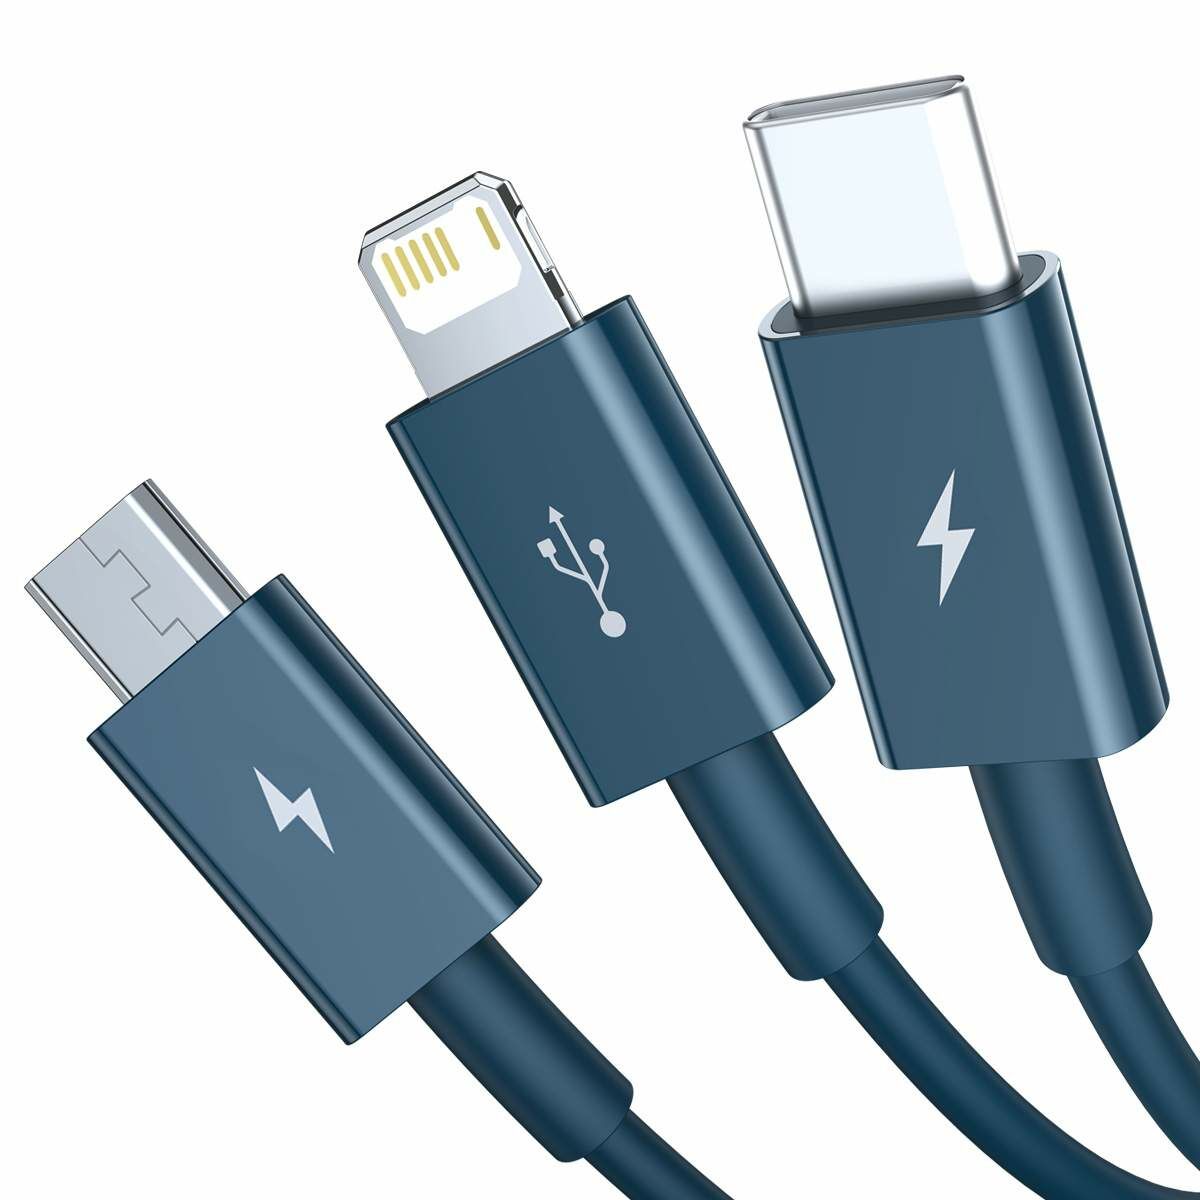 Baseus Univerzális kábel, Superior Series 3-in-1 Gyors töltés, Adatkábel USB bemenetről M+L+C 3.5A 1.5m, kék (CAMLTYS-03)